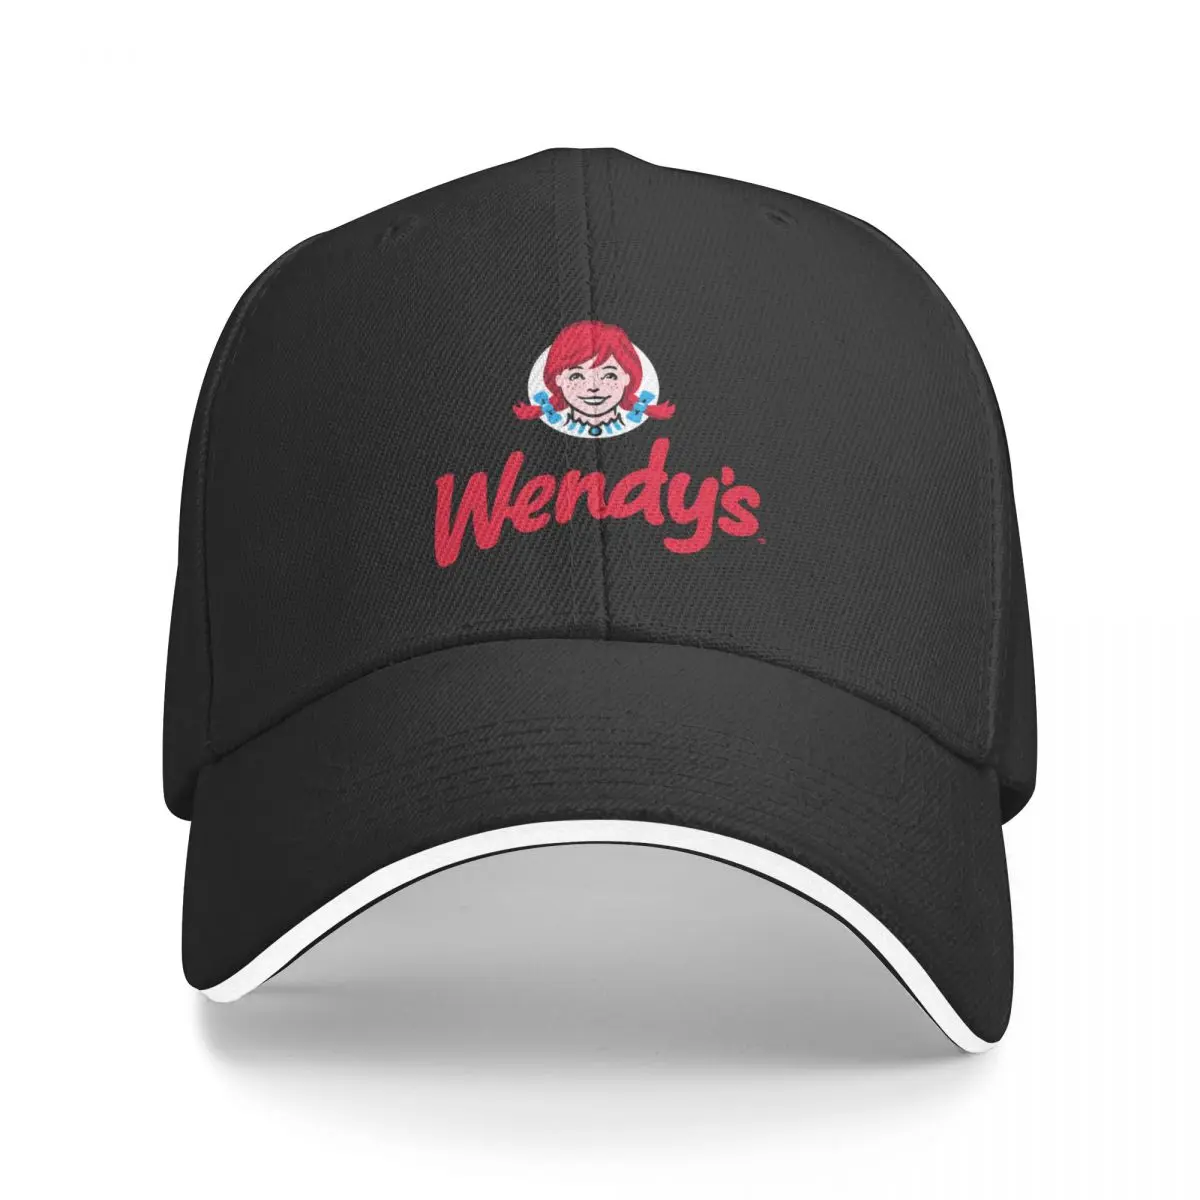 Бейсболка с логотипом ресторана быстрого питания Wendy & x27; s, бейсболка для гольфа, кепка для рыбалки, Солнцезащитный крем, Мужская теннисная женская кепка